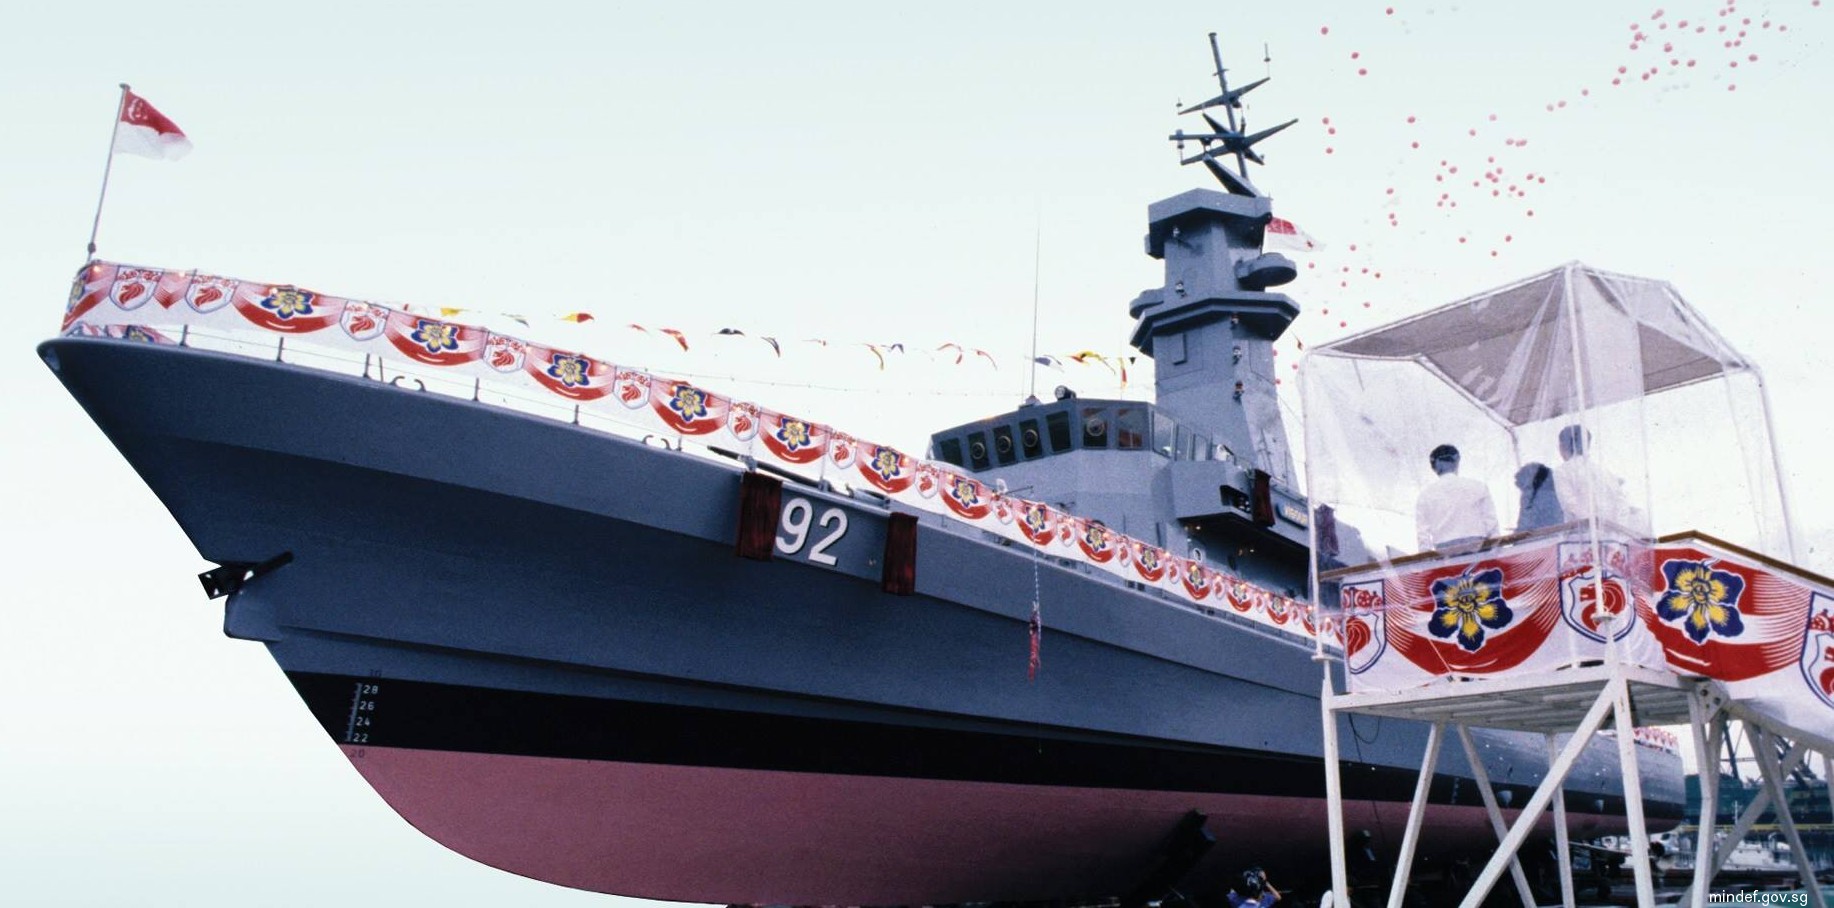 92 rss vigour victory class missile corvette republic singapore navy 03